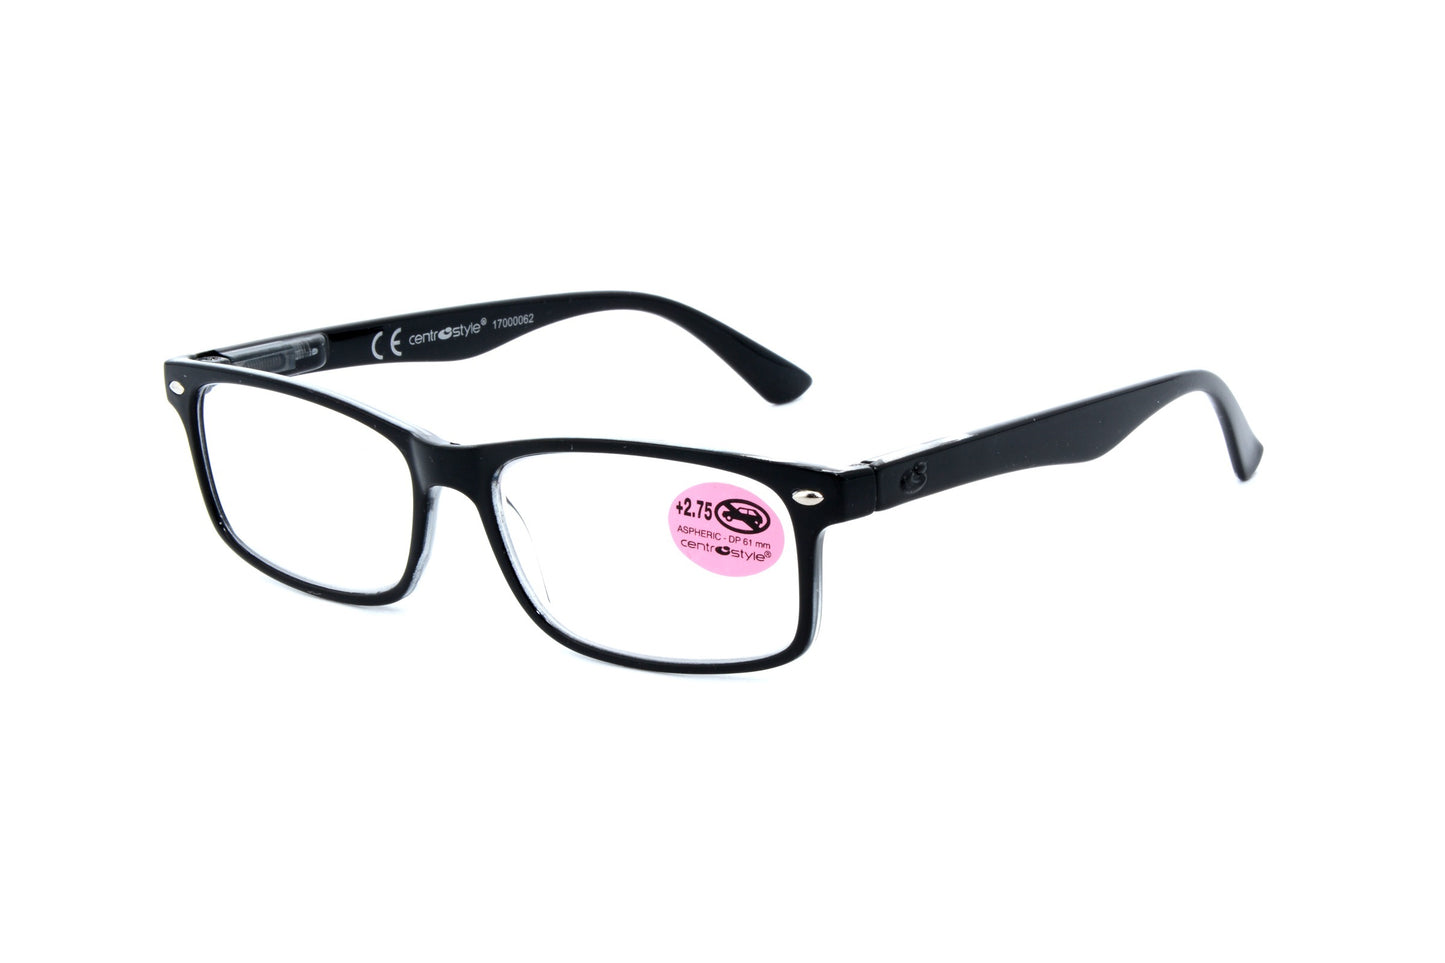 Centrostyle reading glasses 60770-9 - Optics Trading